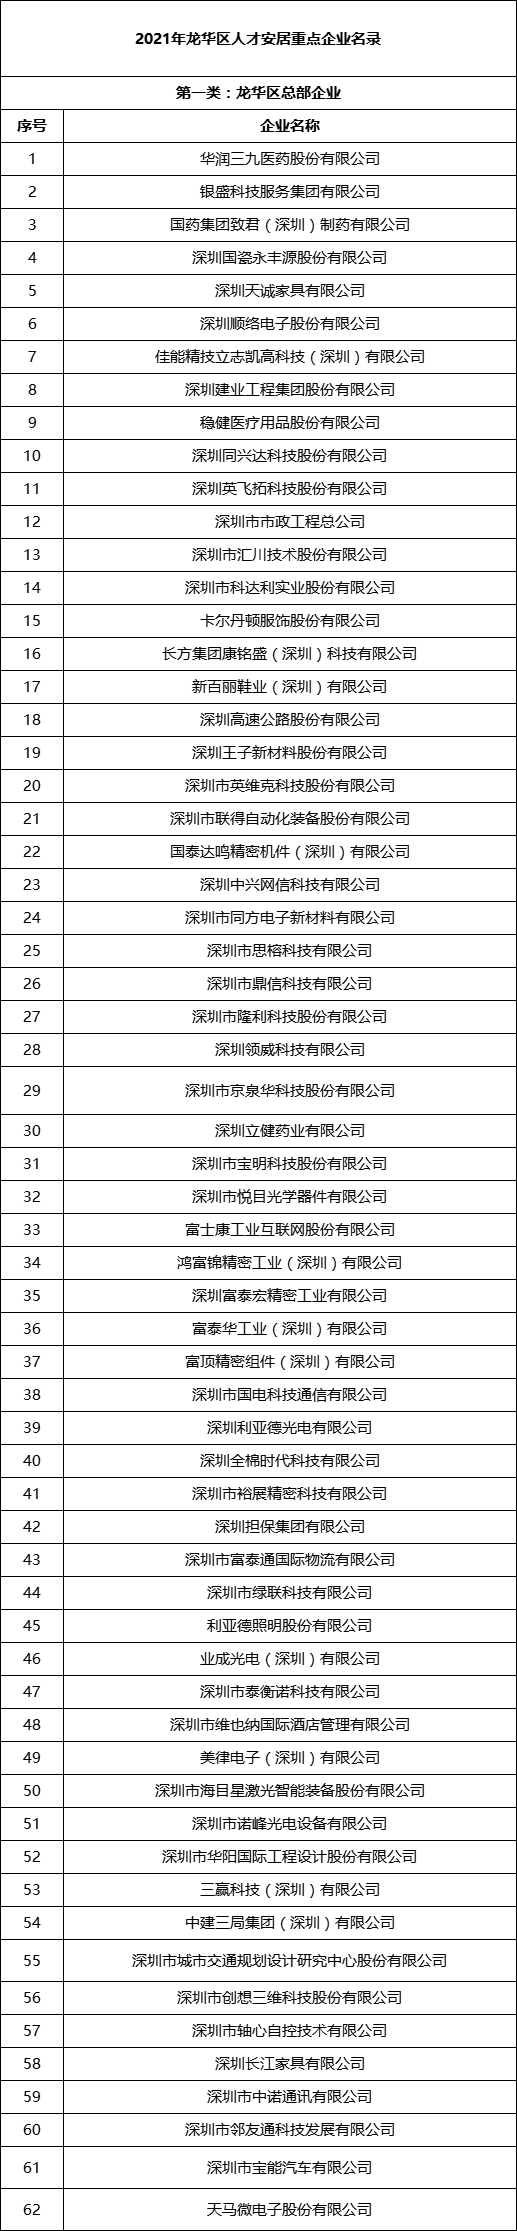 深圳市龙华区住房和建设局关于2022年龙华区第一批长租公寓配租(企业)的通告